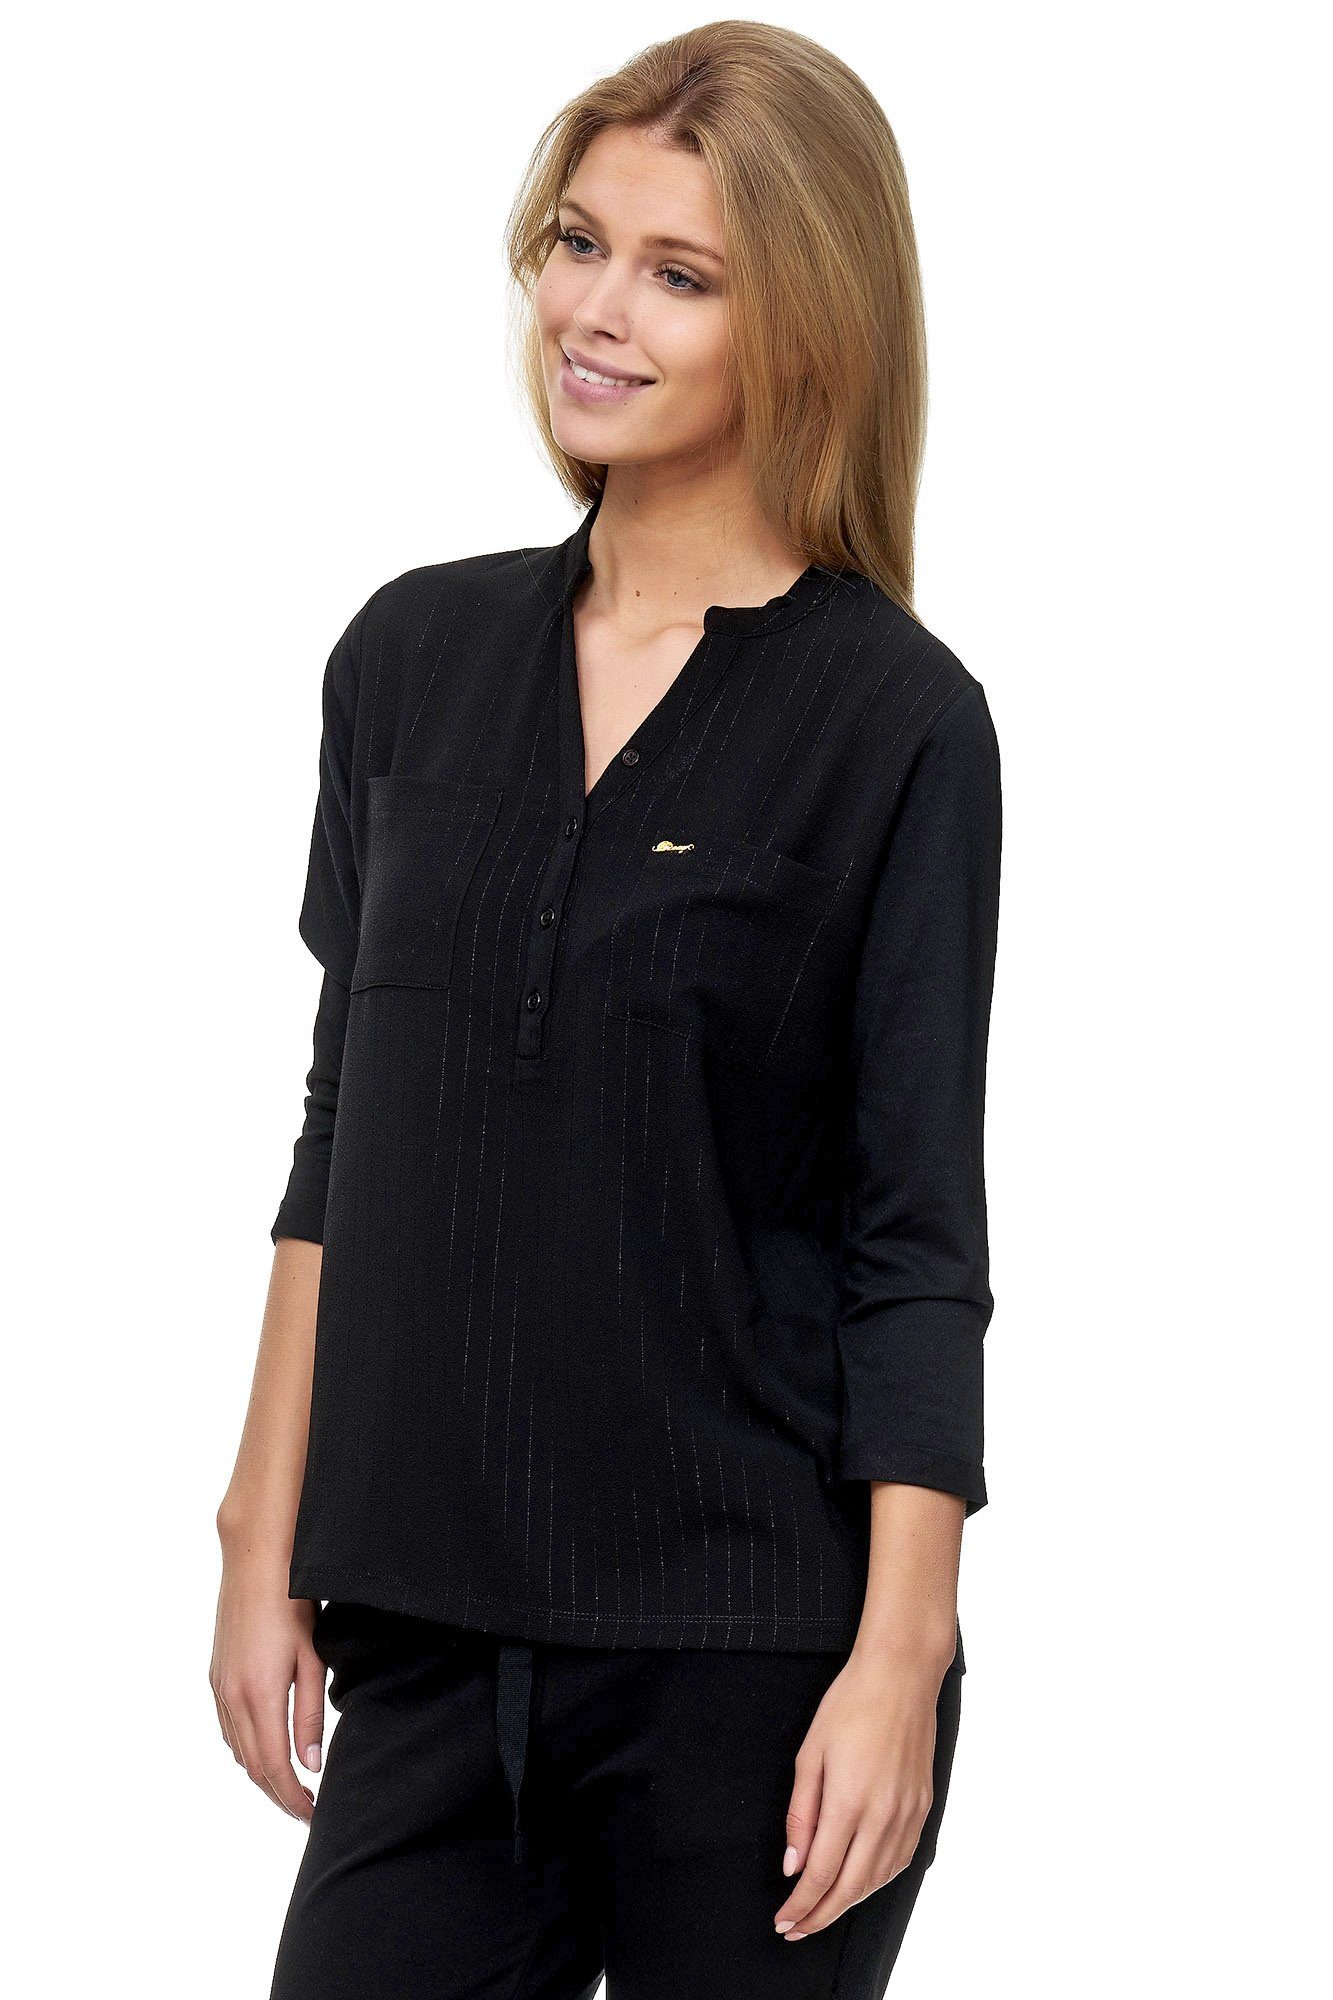 Decay Klassische Bluse schwarz mit modischem V-Ausschnitt